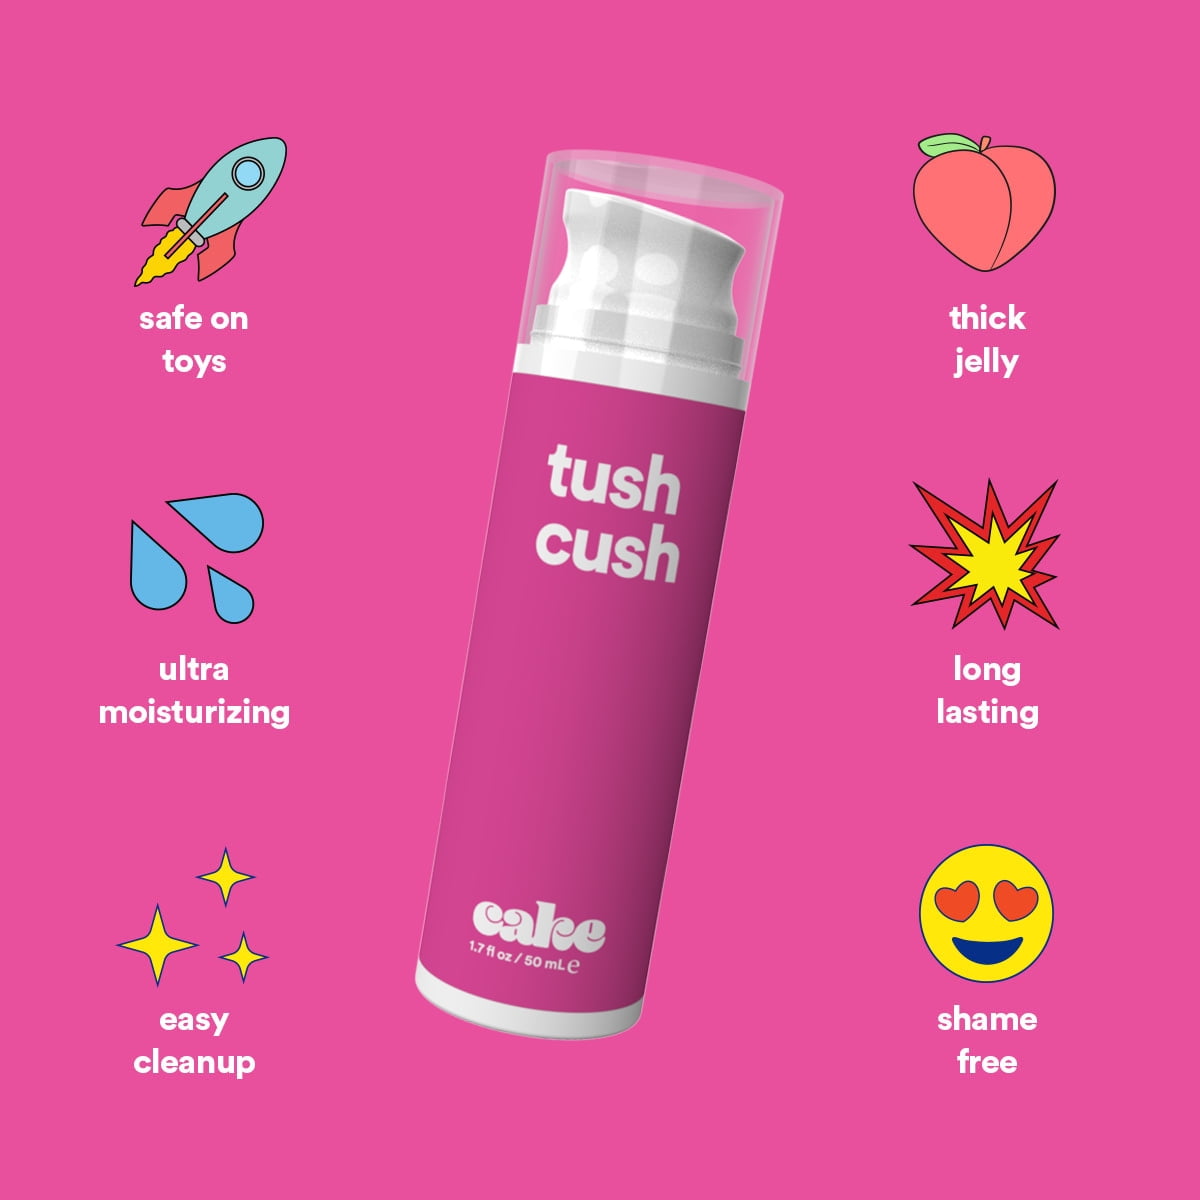 joe's tush cush [Bulk] - Click for more info!